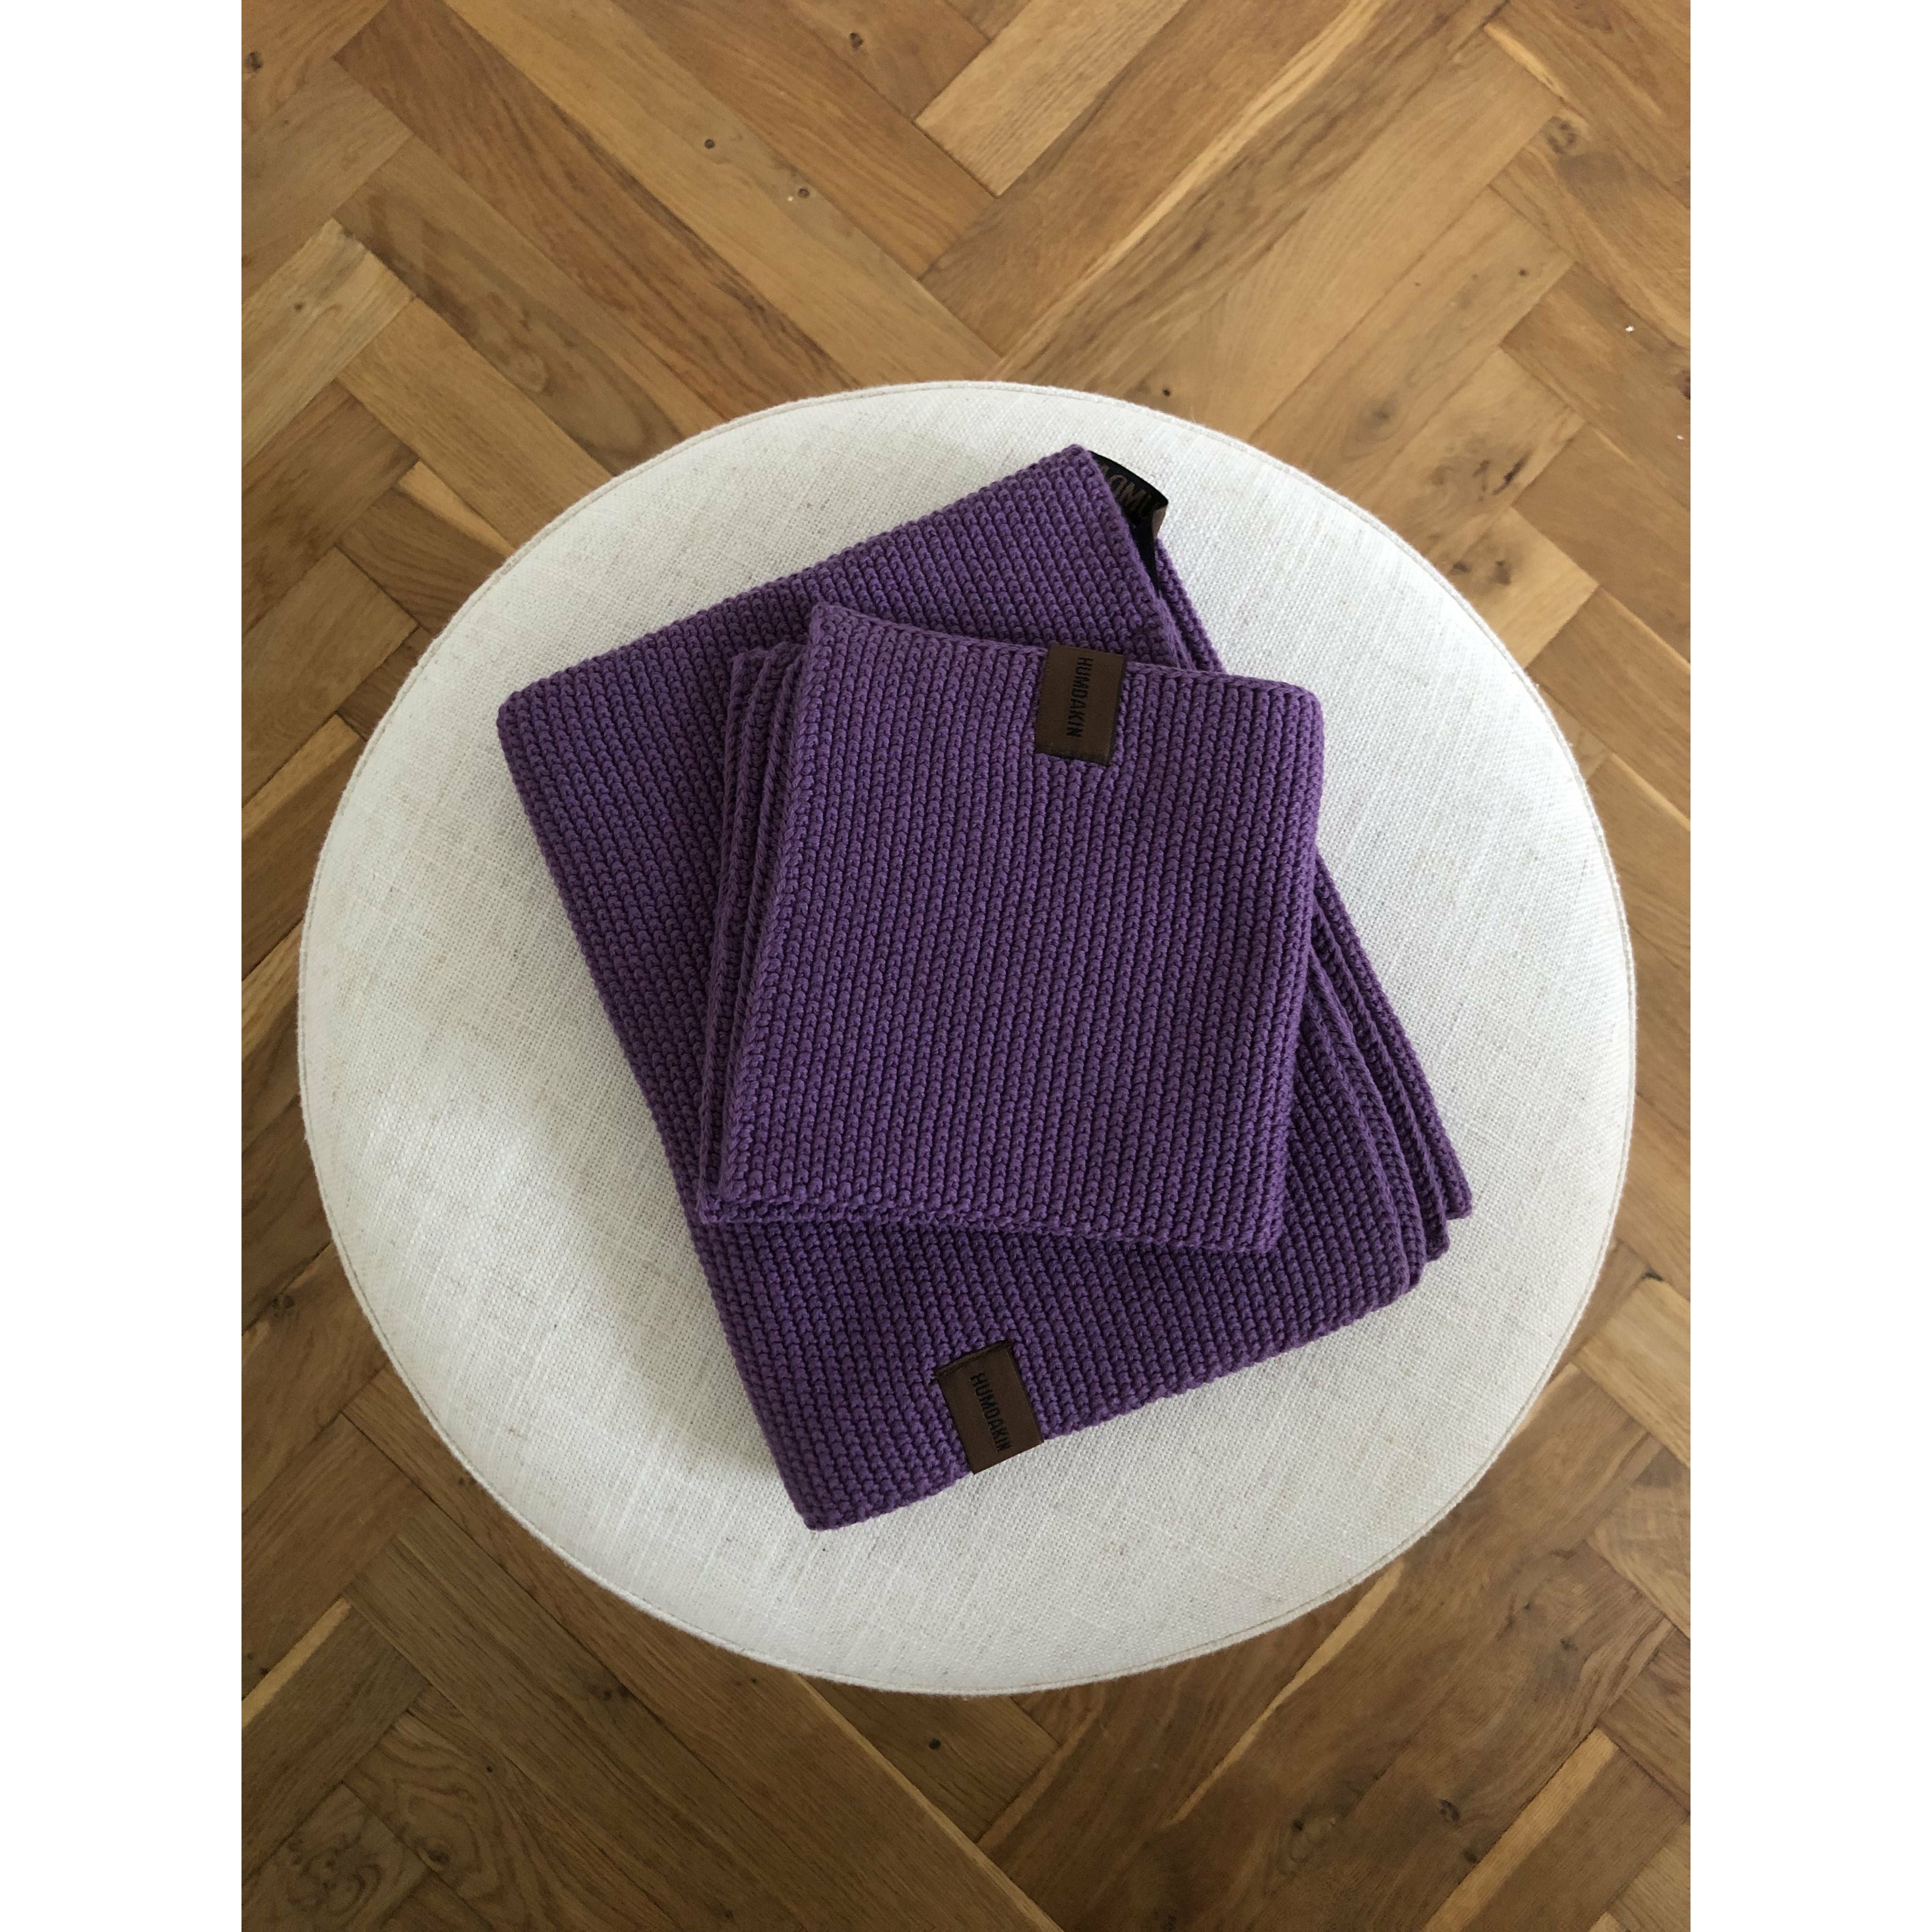 Humdakin Tenon de thé bio en tricoté, violet